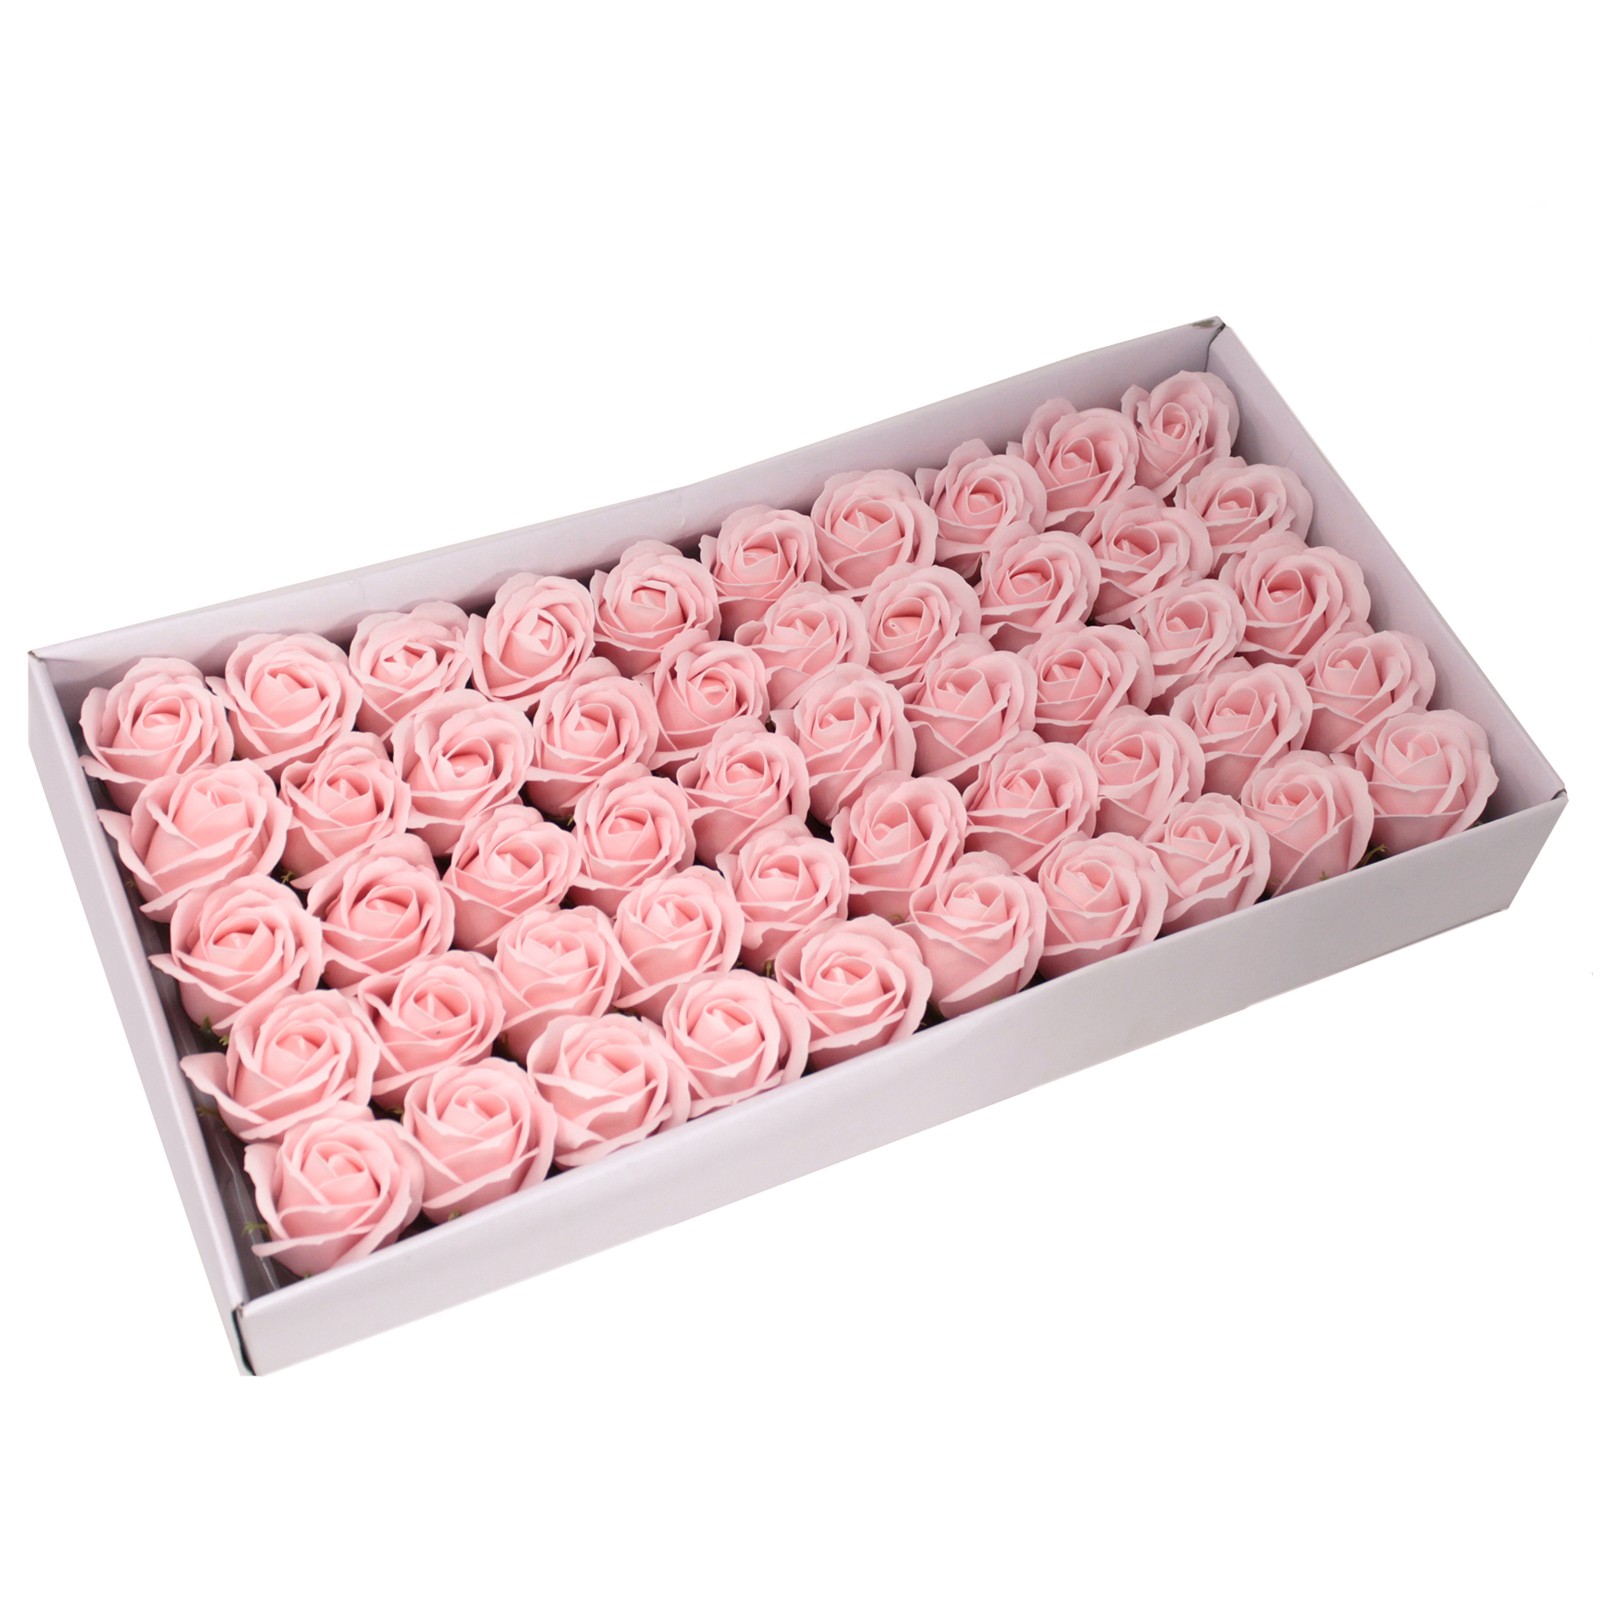 10 x Craft Soap Flowers - Med Rose - Pink